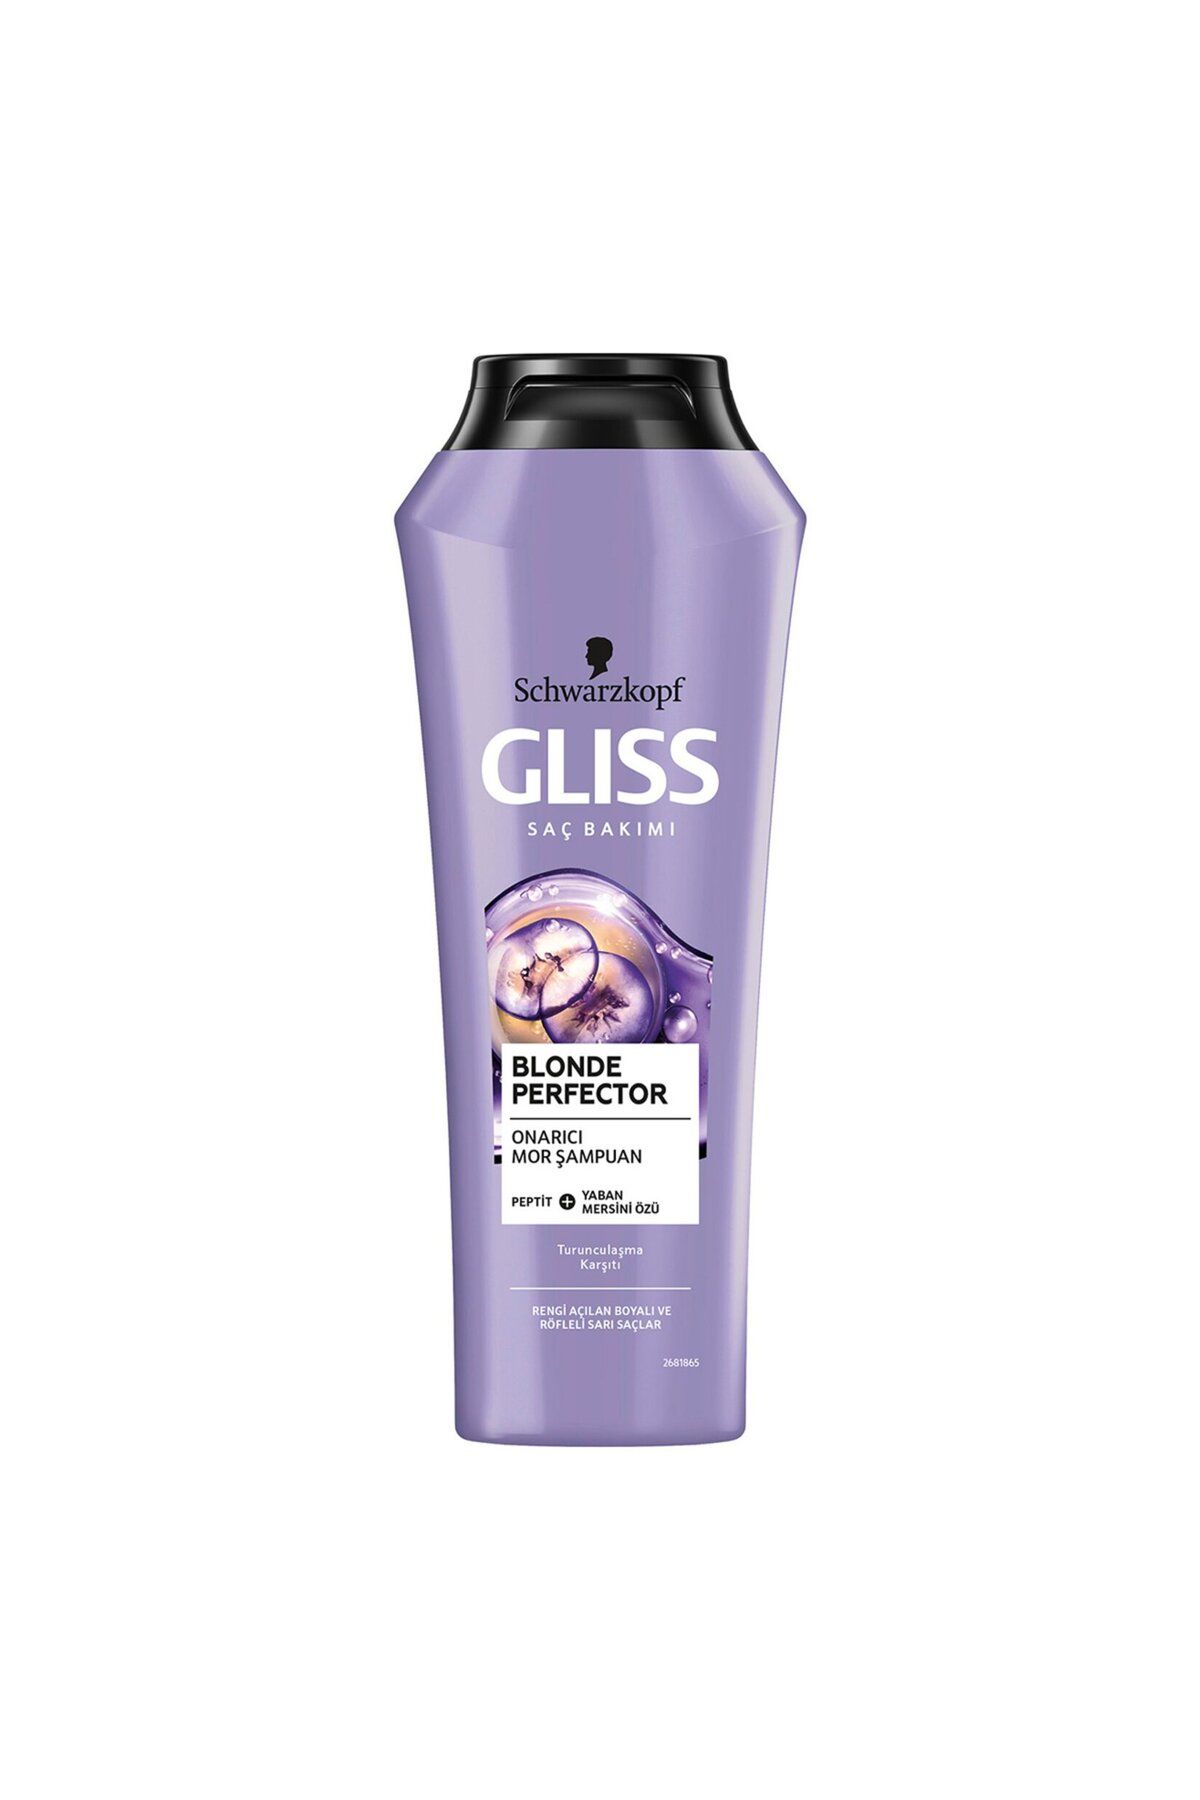 Gliss Blonde Perfector Onarıcı Mor Şampuan 250 ml